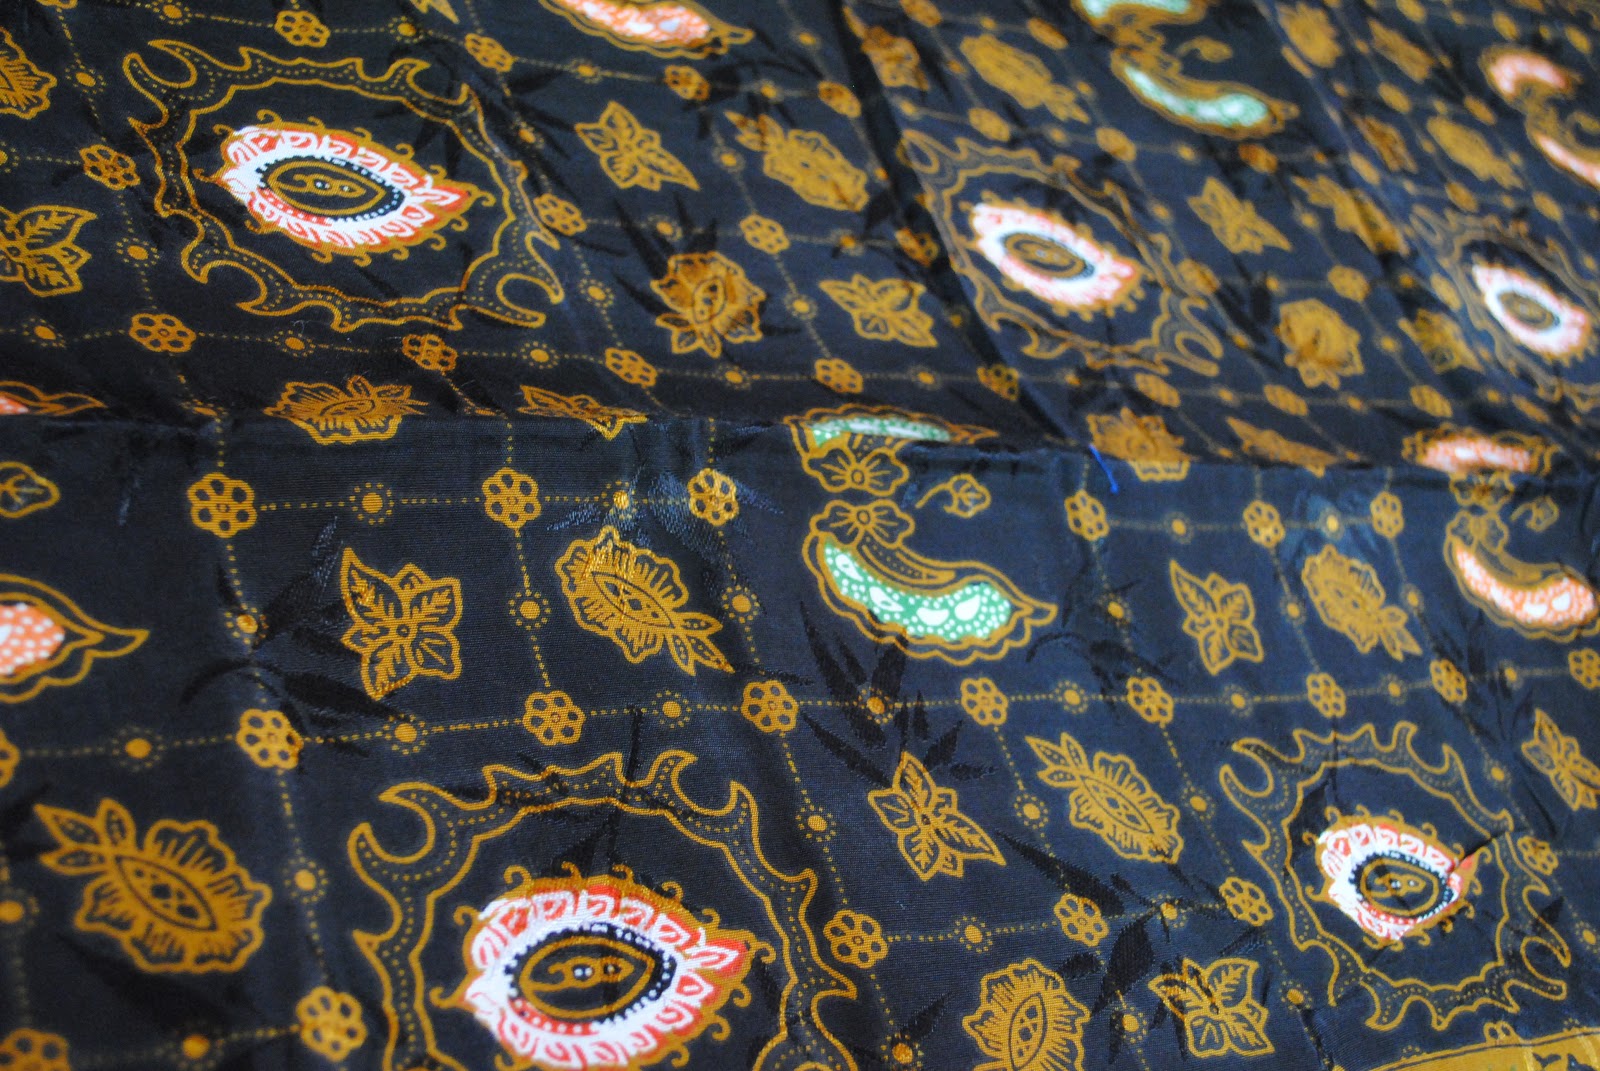 Mirabella Batik jambi: Macam-macam motif batik jambi yg ada di toko kami